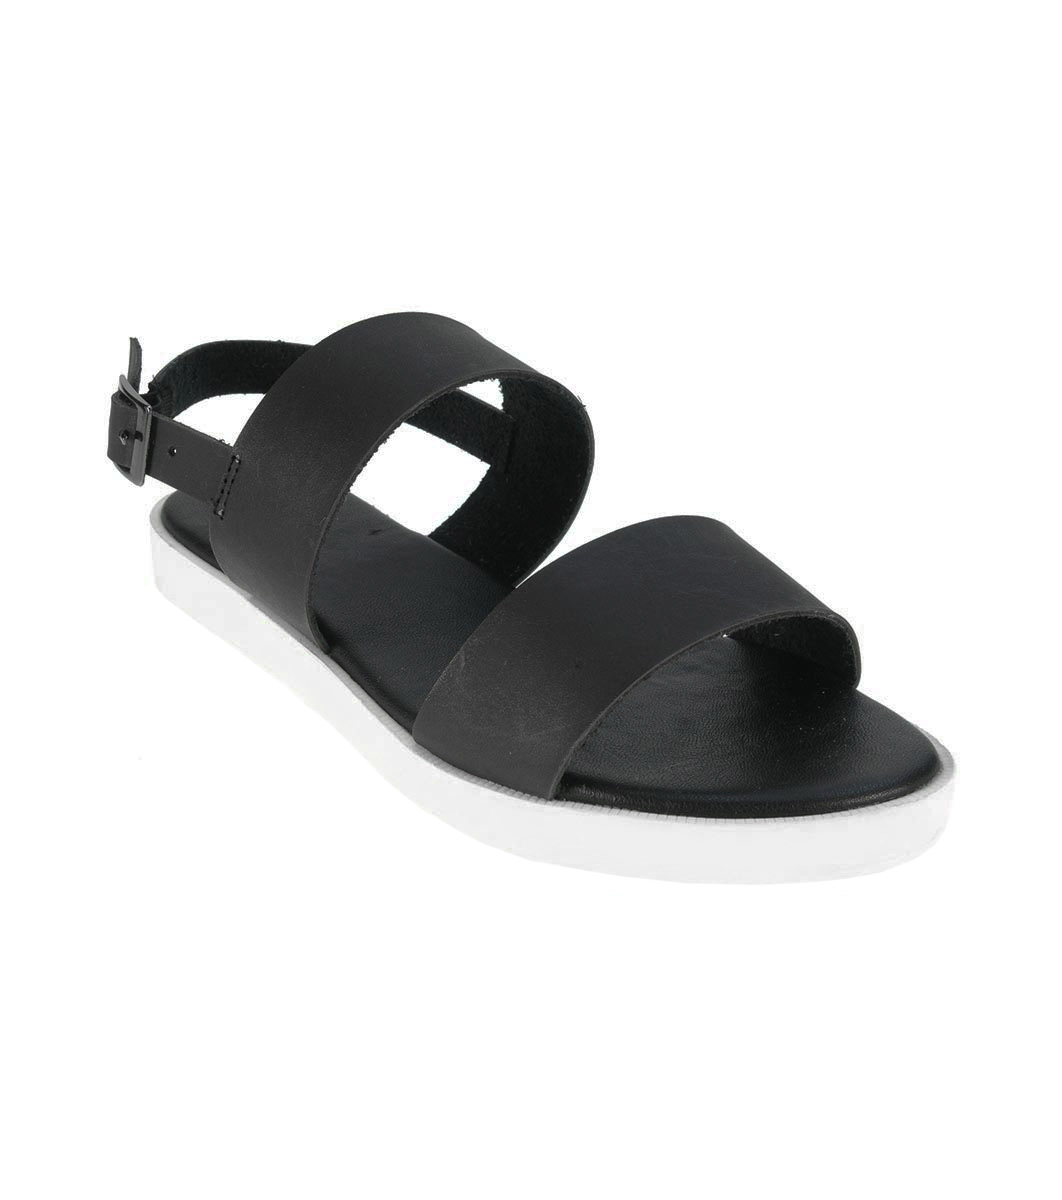 Sandale negre cu talpă contrastantă - Încălțăminte - Încălţăminte ...